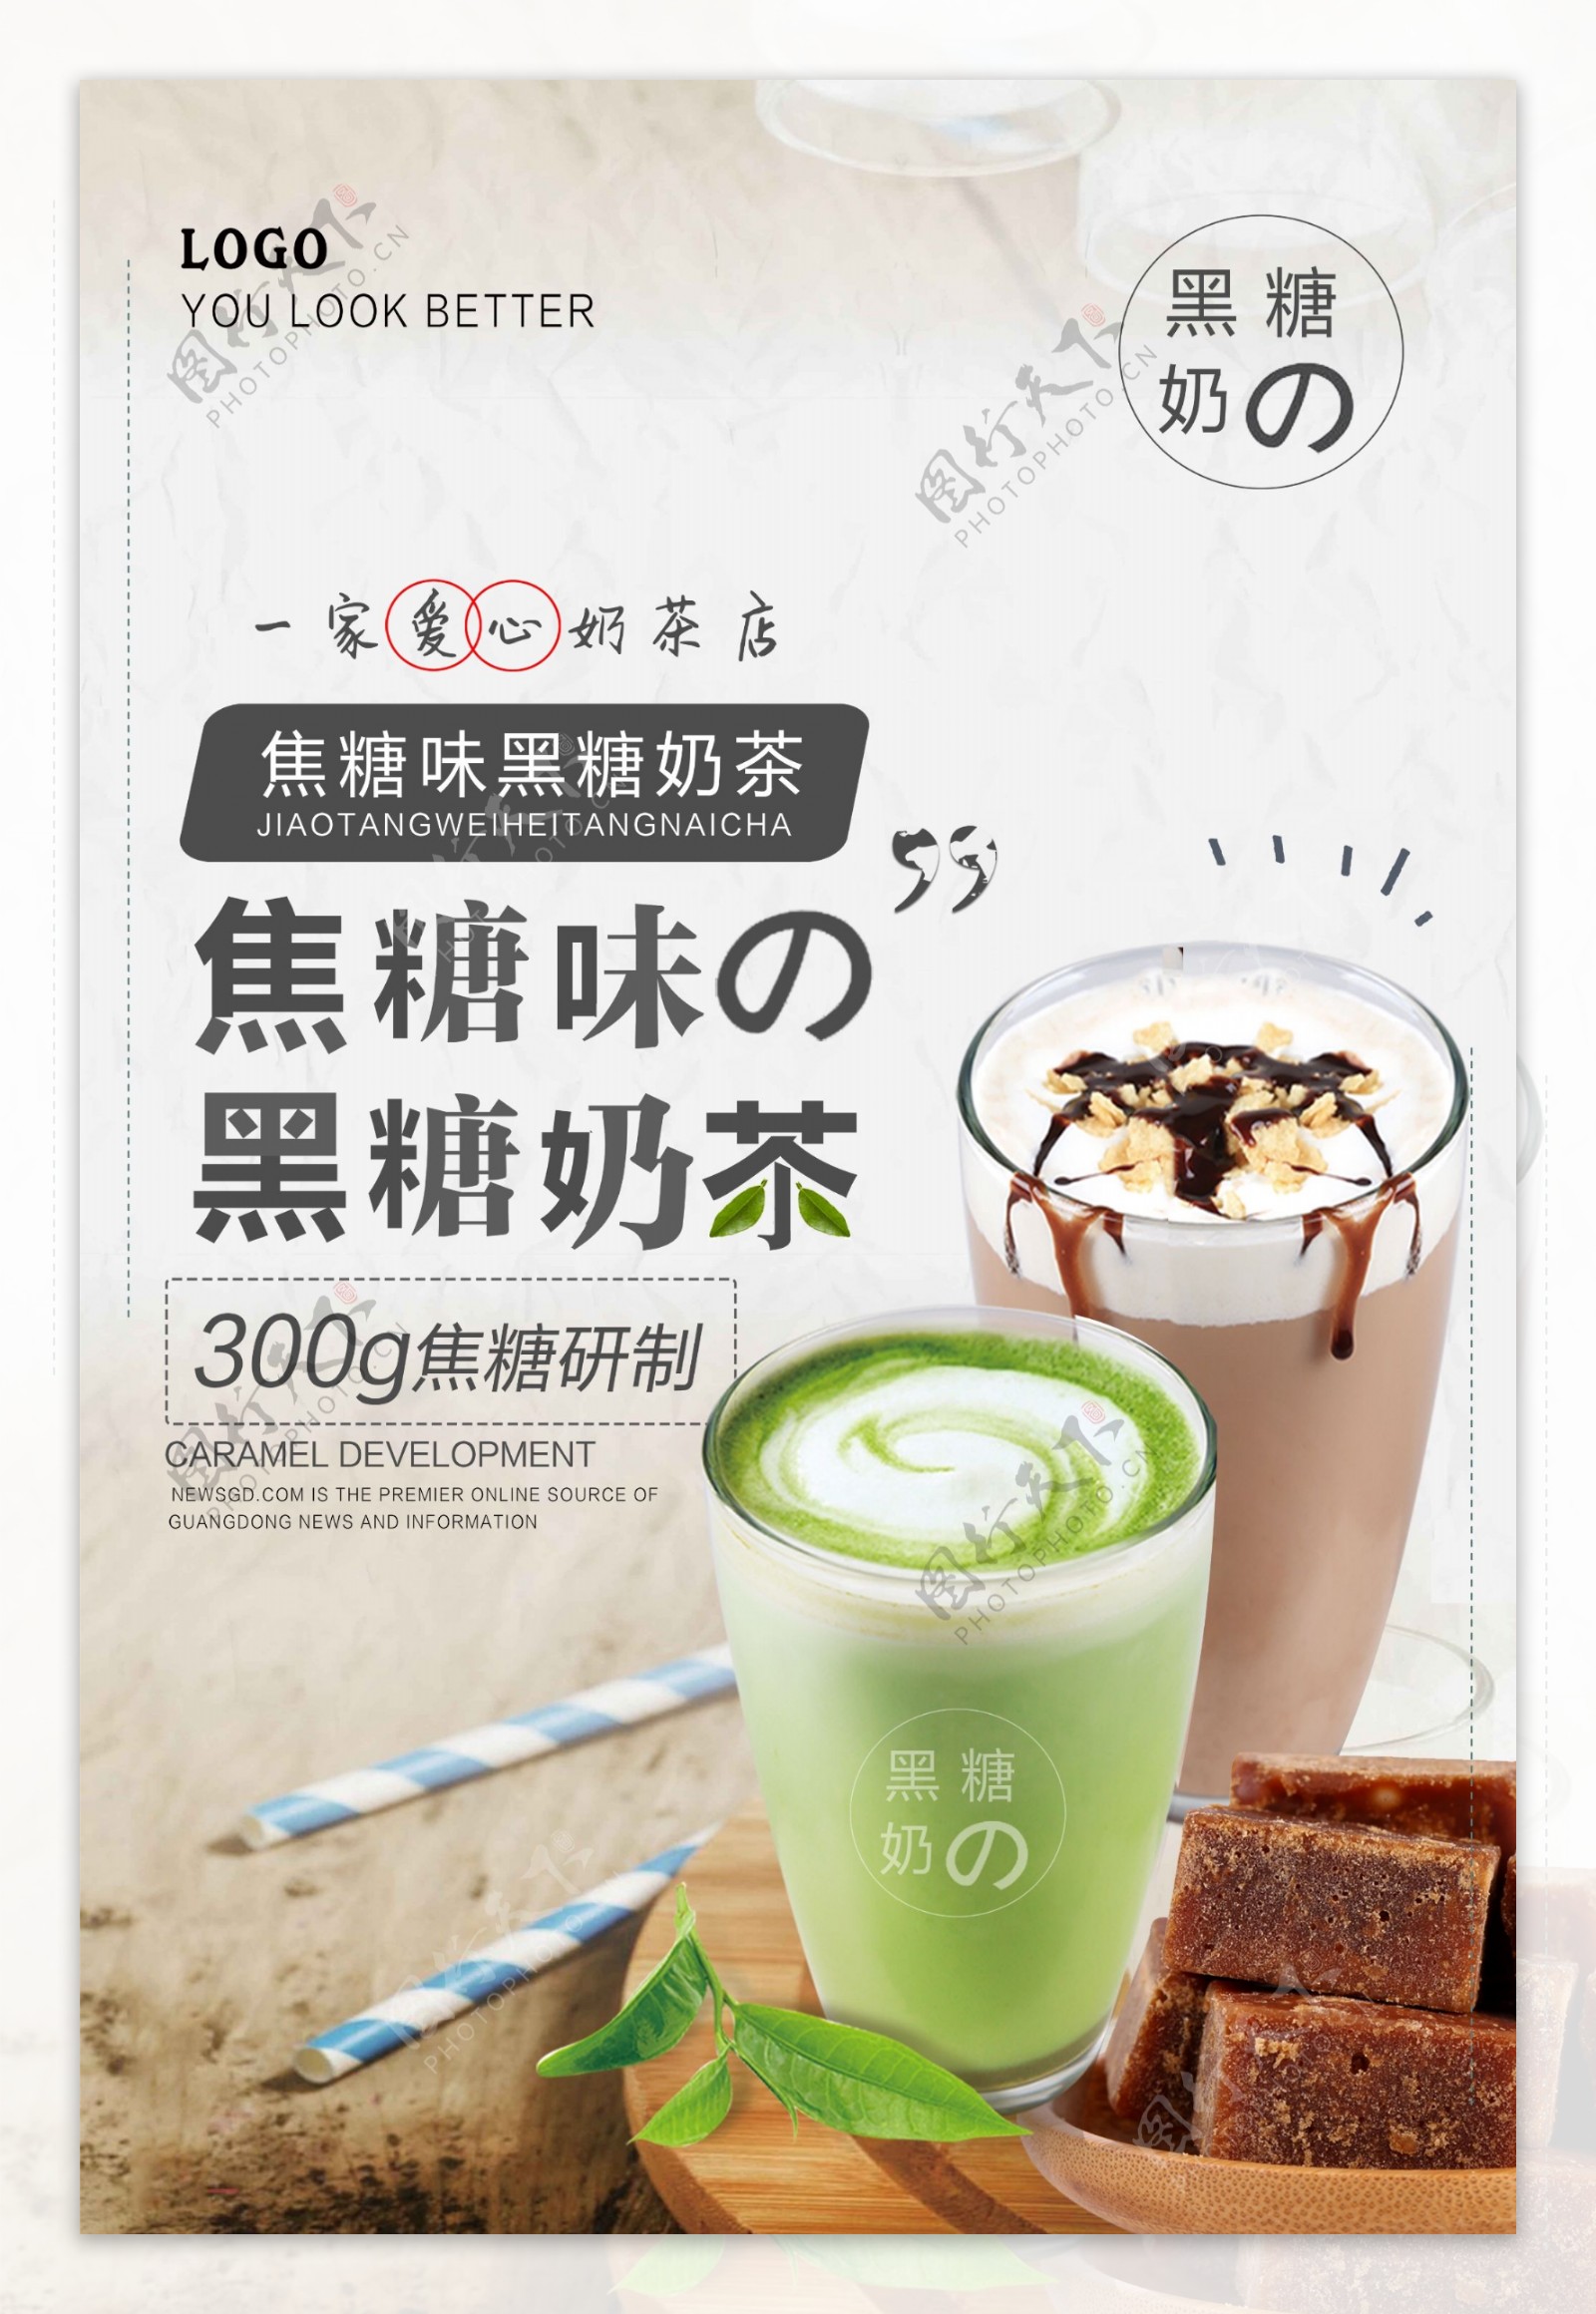 饮品店奶茶促销海报